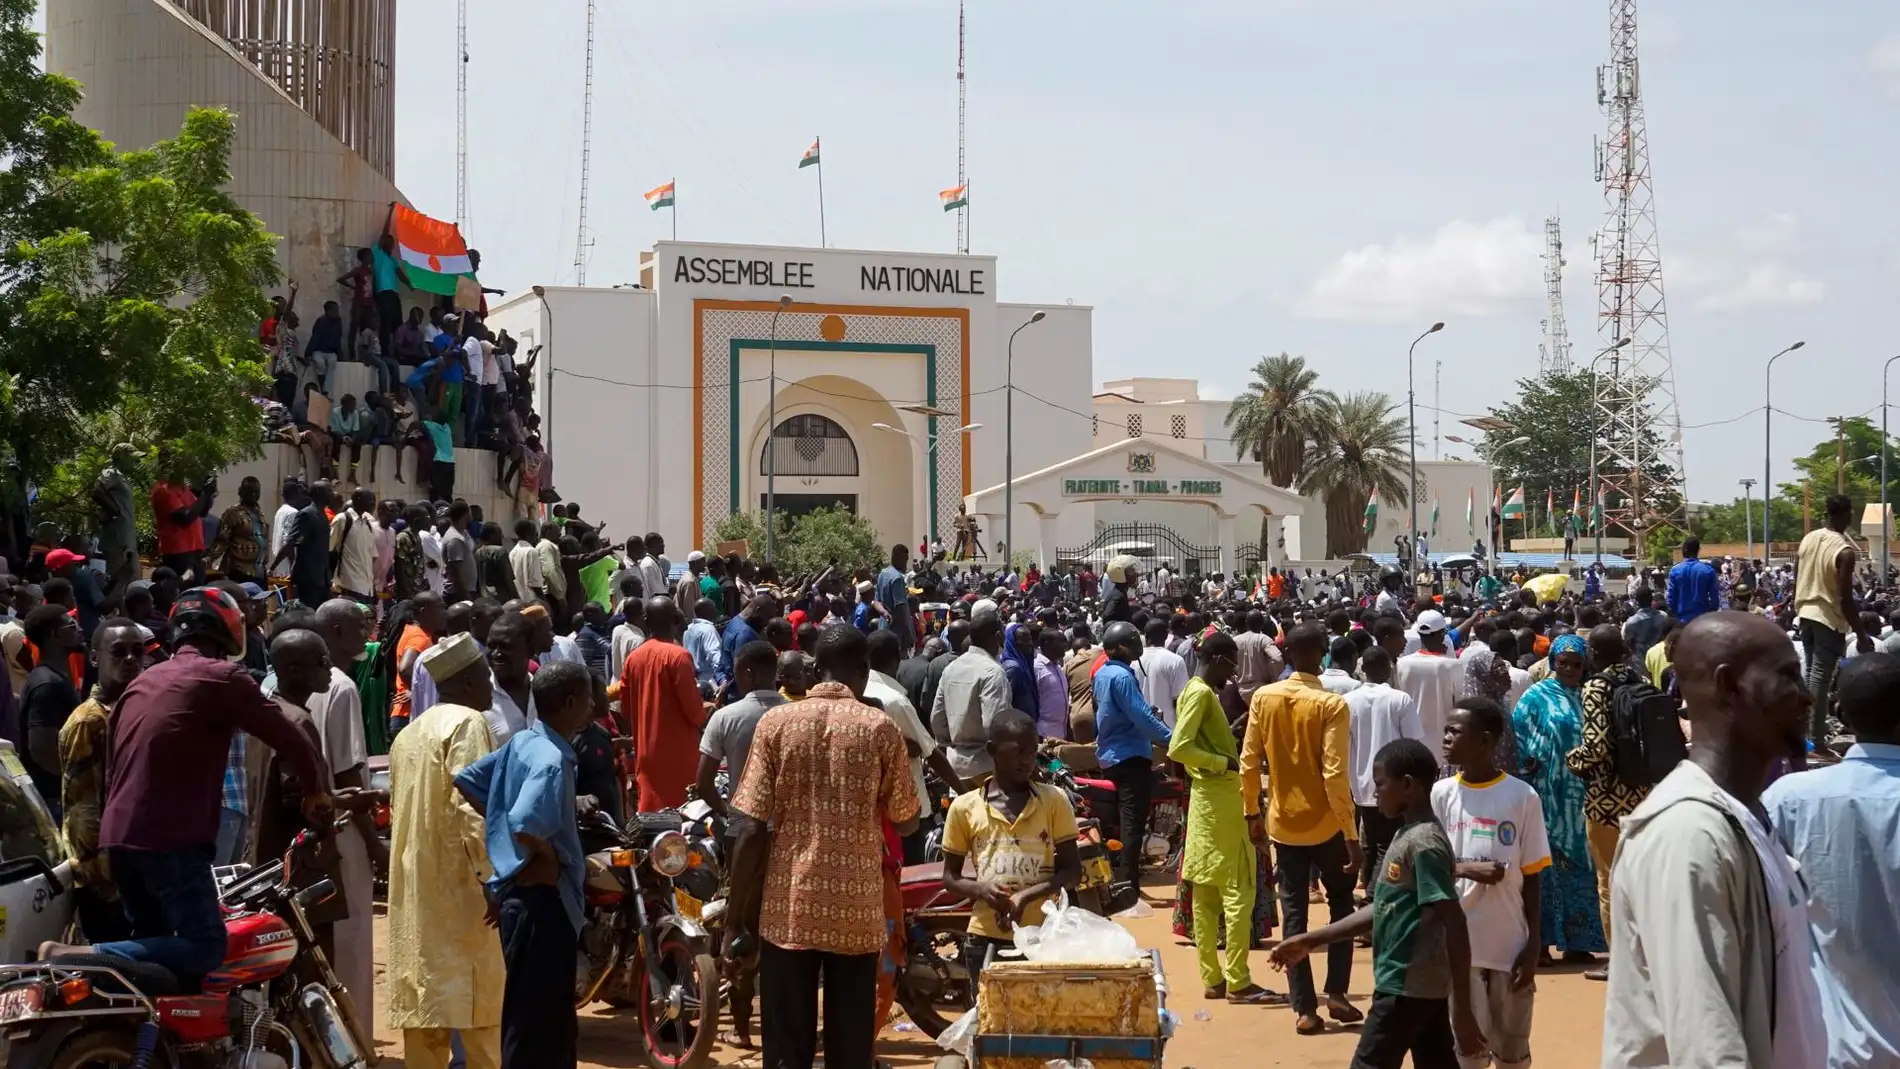 España suspende la cooperación con Níger mientras no se restablezca el orden democrático